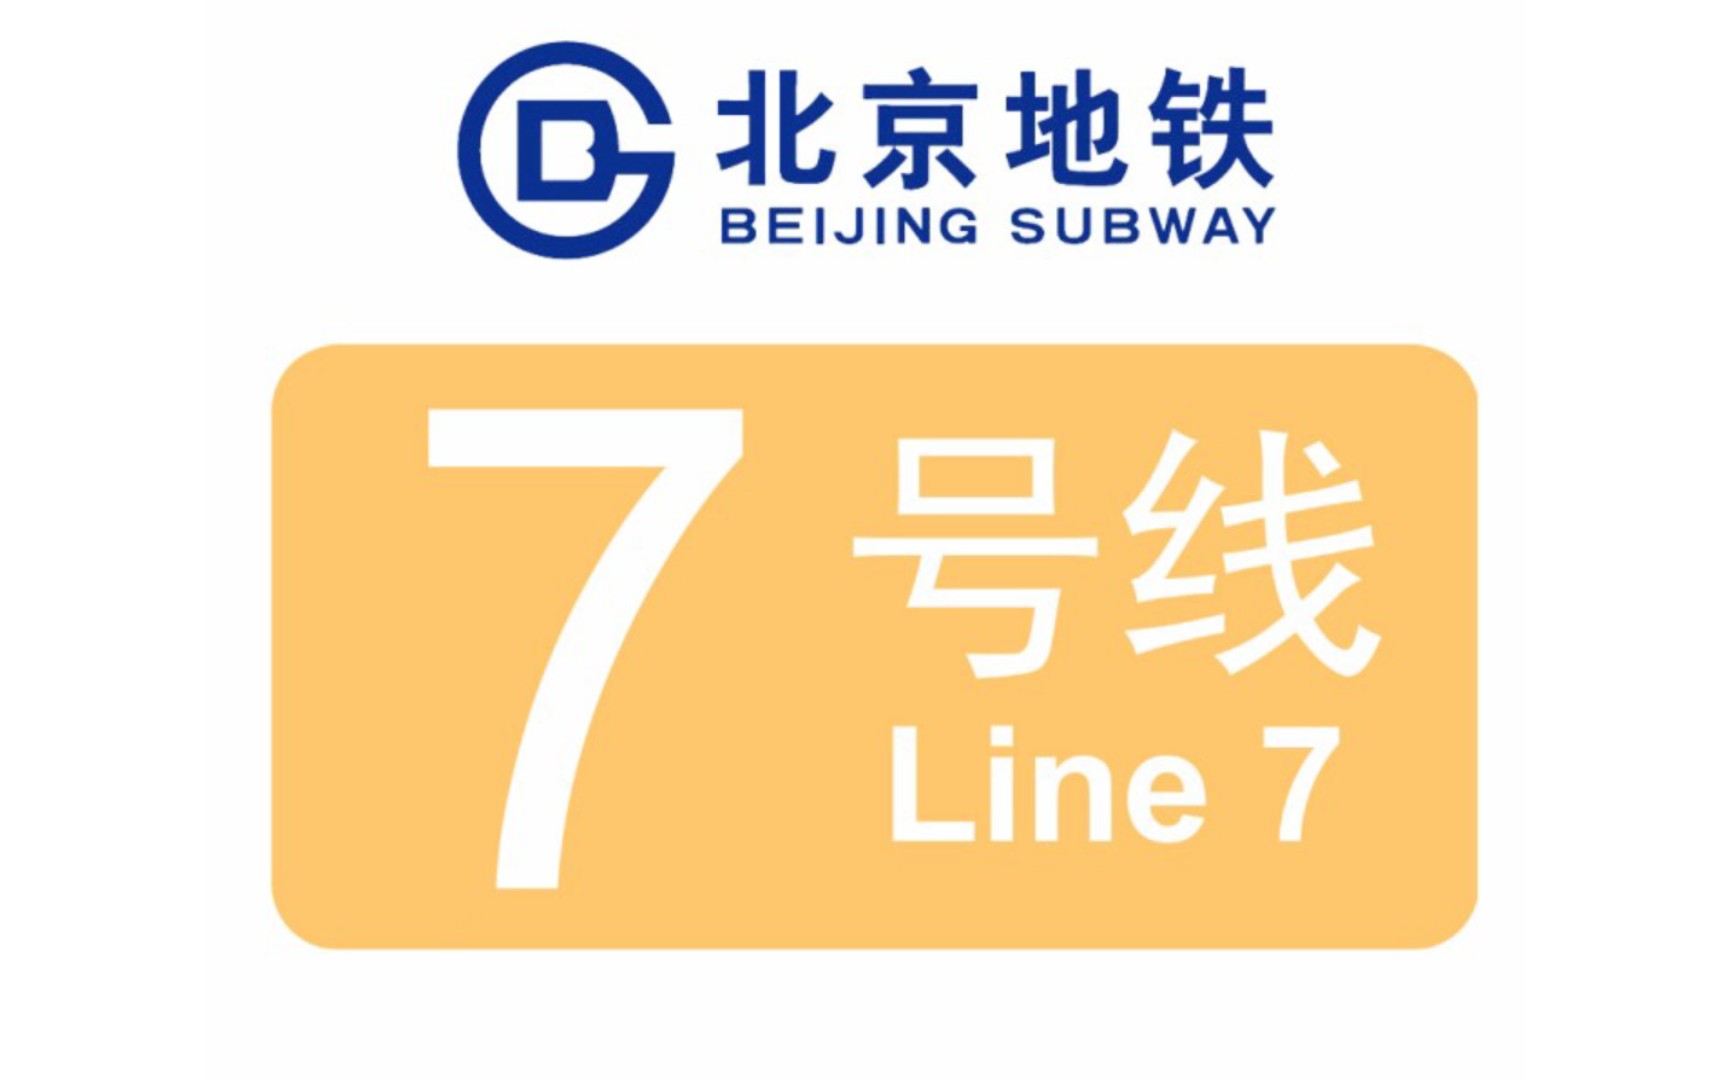 铁路线路图生成器北京地铁七号线